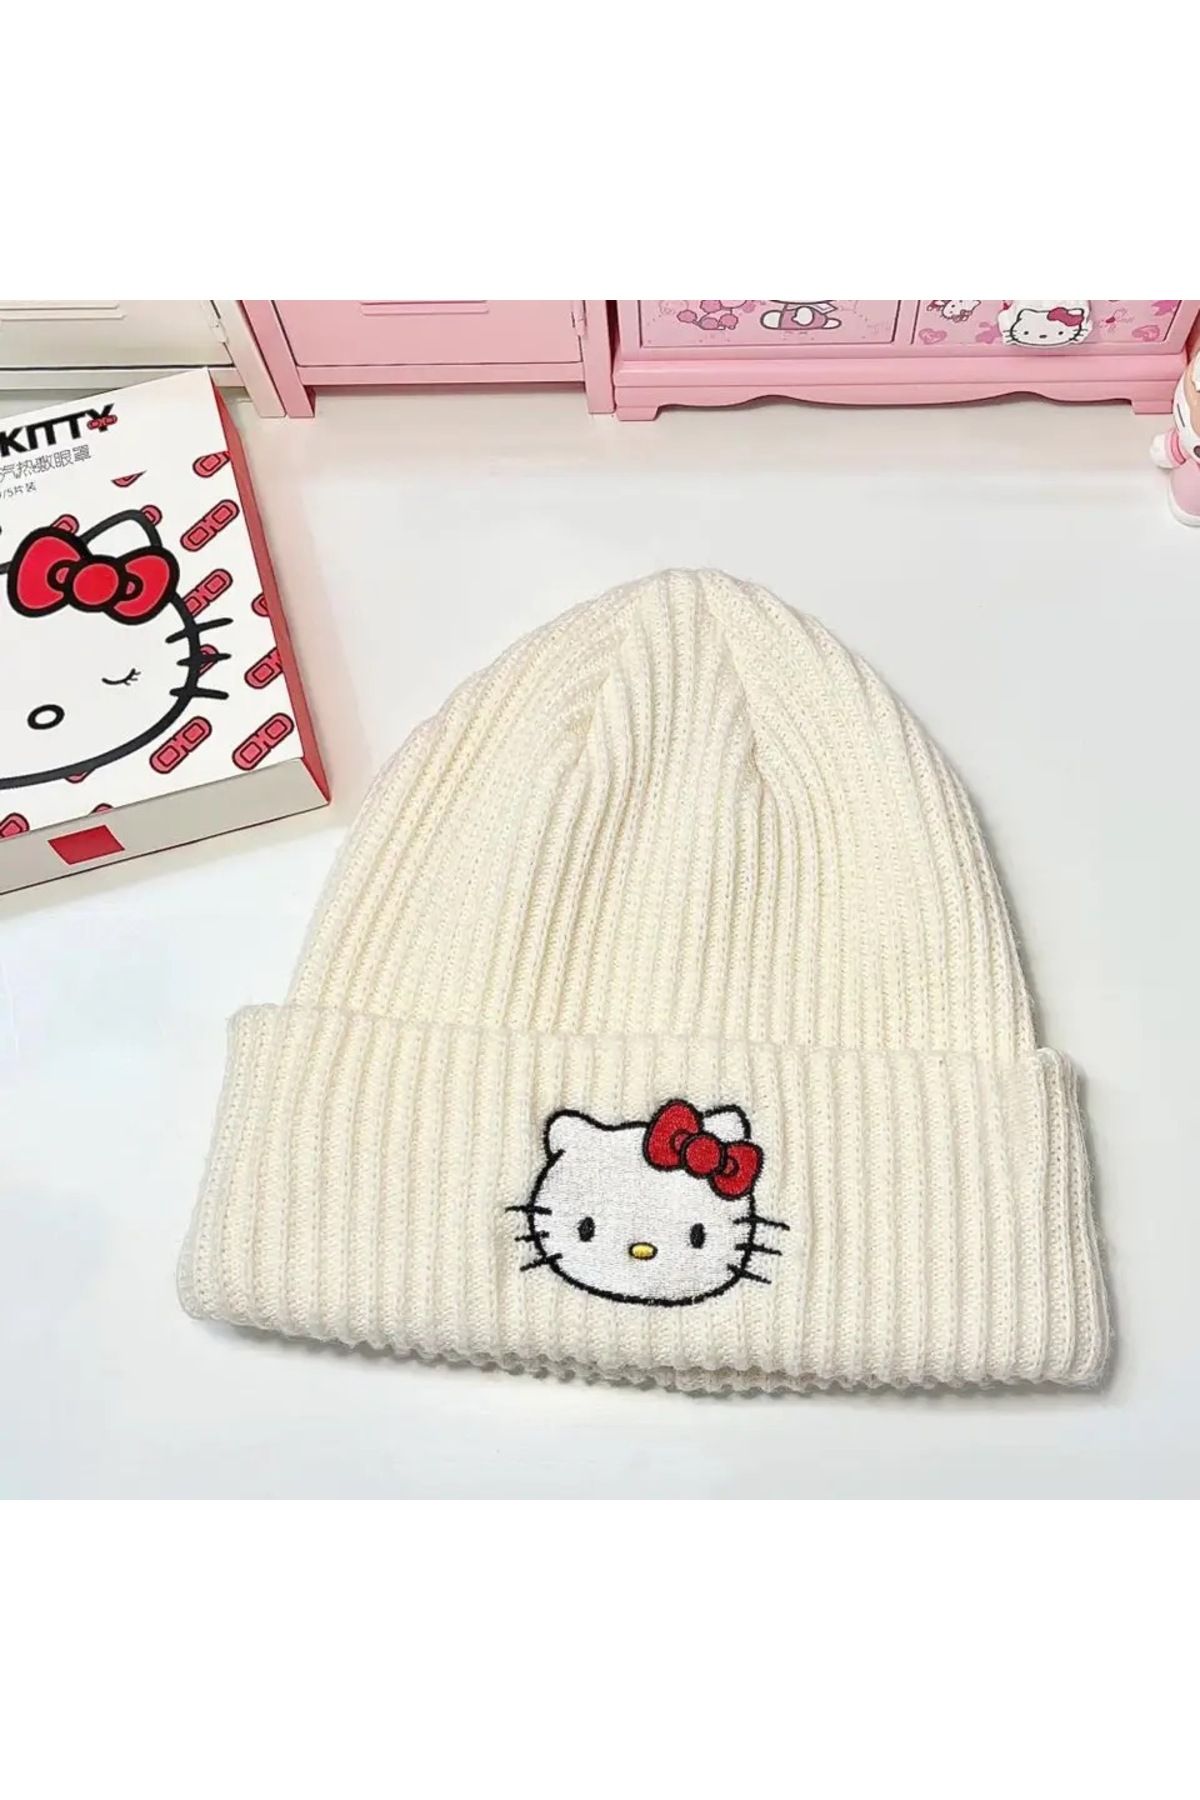 Köstebek Sanrio Anime Hello Kitty Kışlık Bere